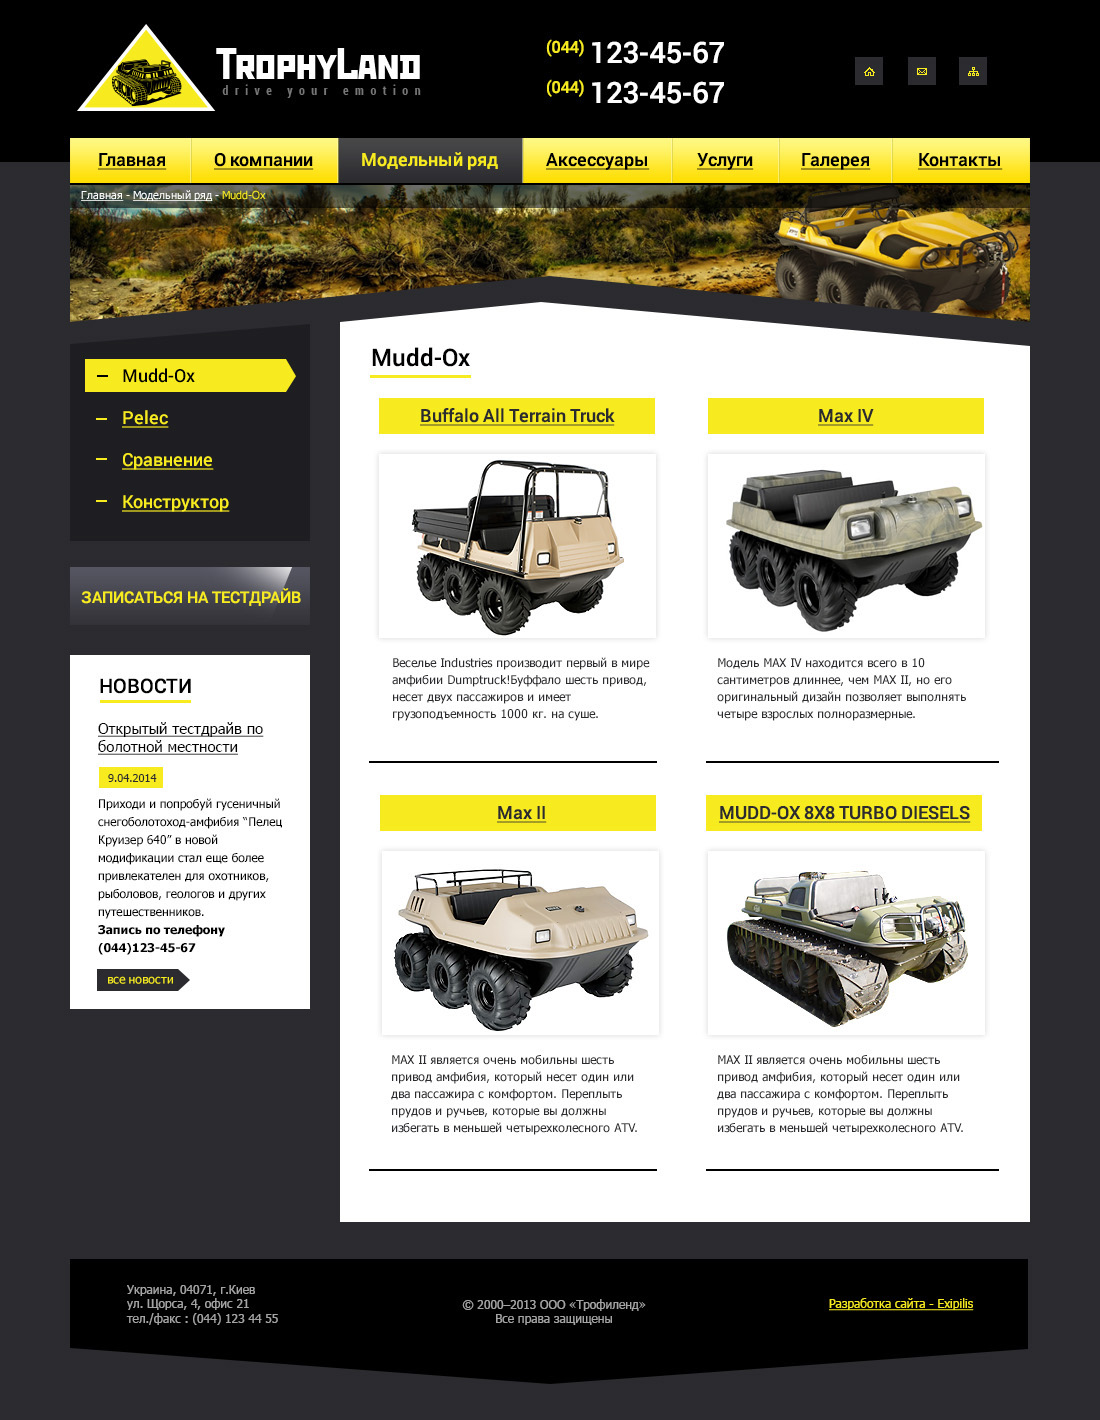 Brand page design of TrophyLand website